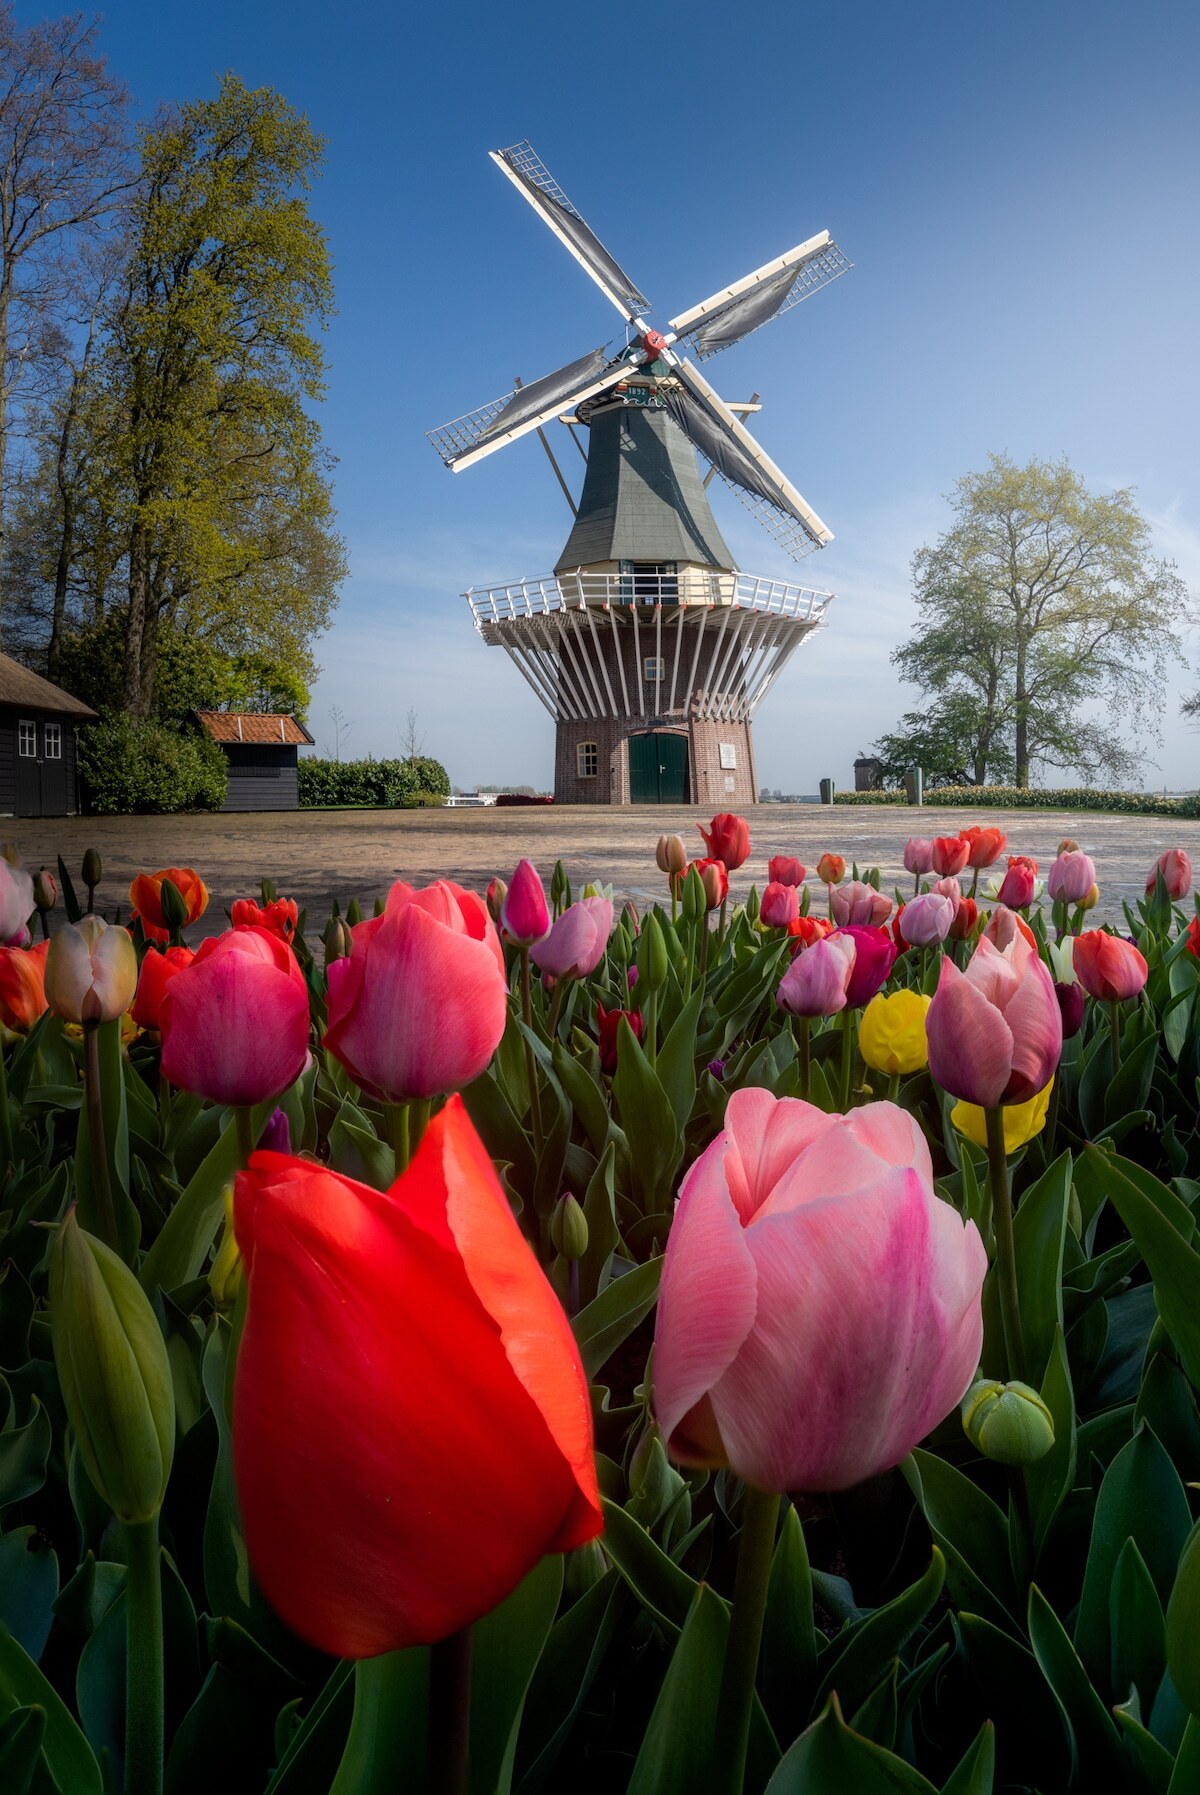 Dros thoải mái khám phá công viên có diện tích trên 30 hecta, dành quỹ thời gian một ngày chụp các loại hoa tulip và những công trình biểu tượng của Hà Lan, gồm cối xay gió được dựng mô hình trong khu vườn.